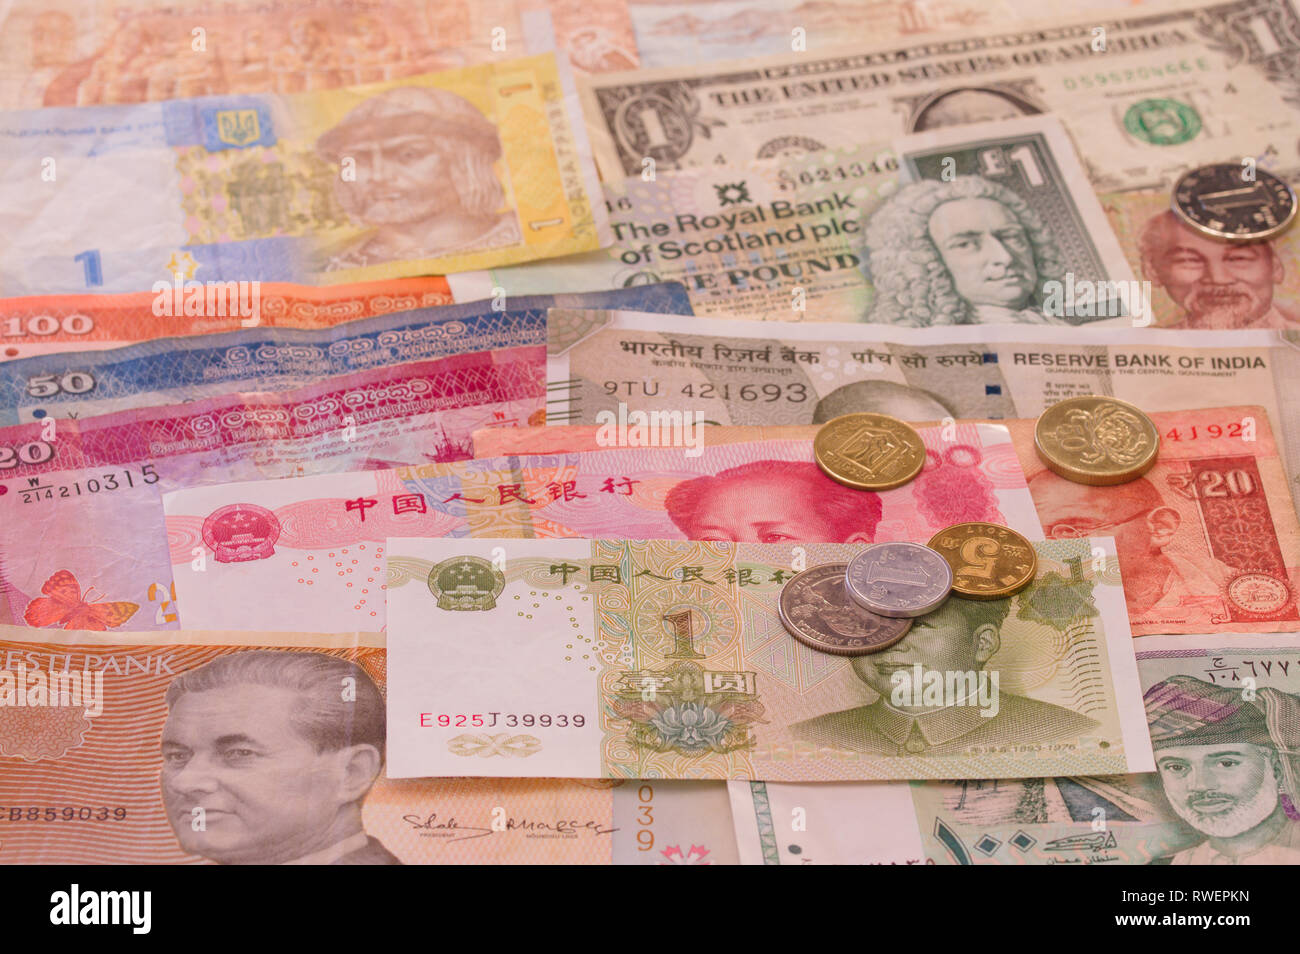 Billets varié de partout dans le monde avec quelques pièces sur la table - Les billets de banque, argent, monnaie, factures, paiement Banque D'Images